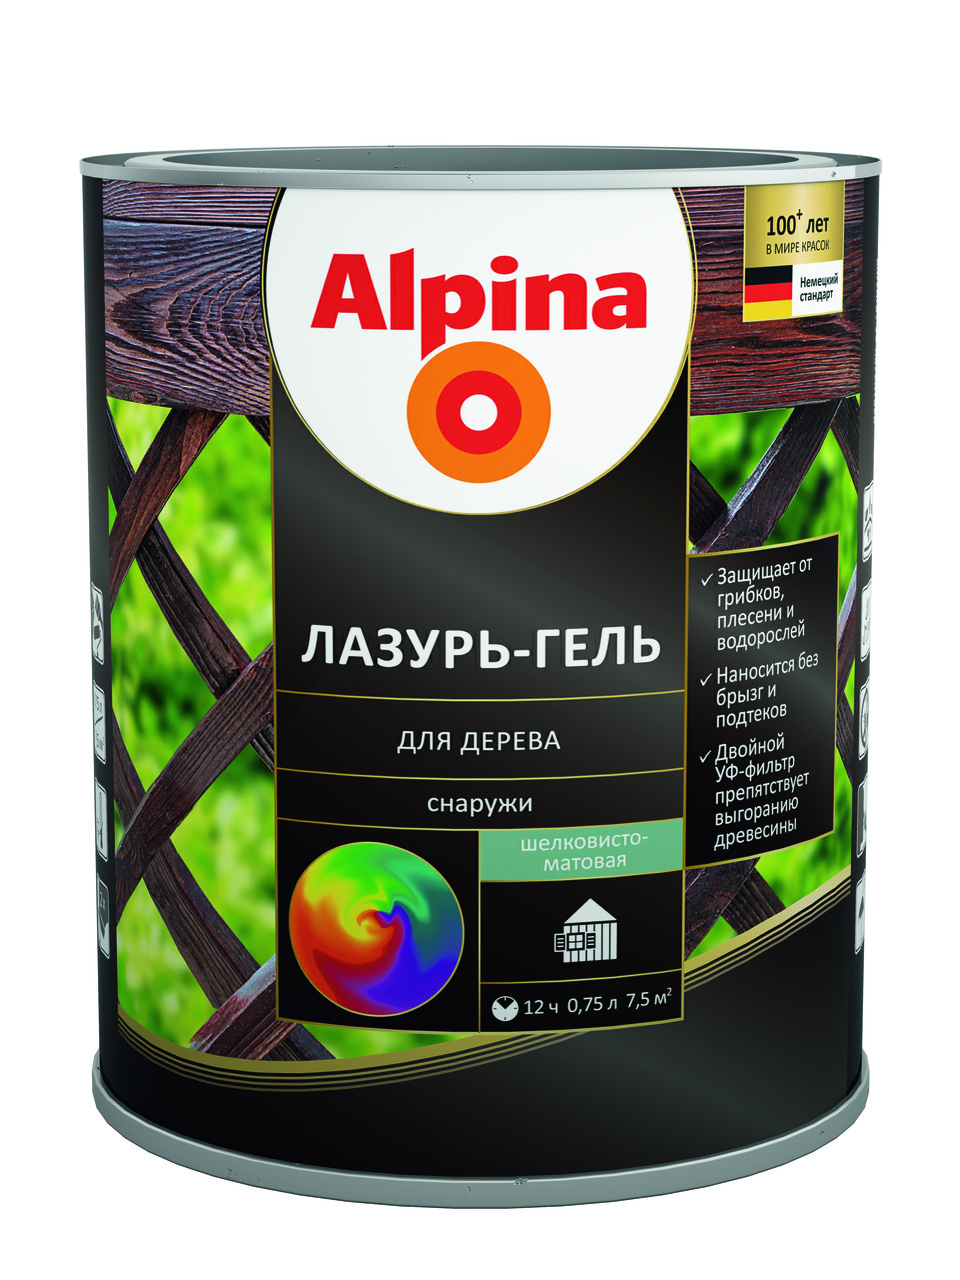 Alpina Лазурь-гель для дерева Цветная 10 л.